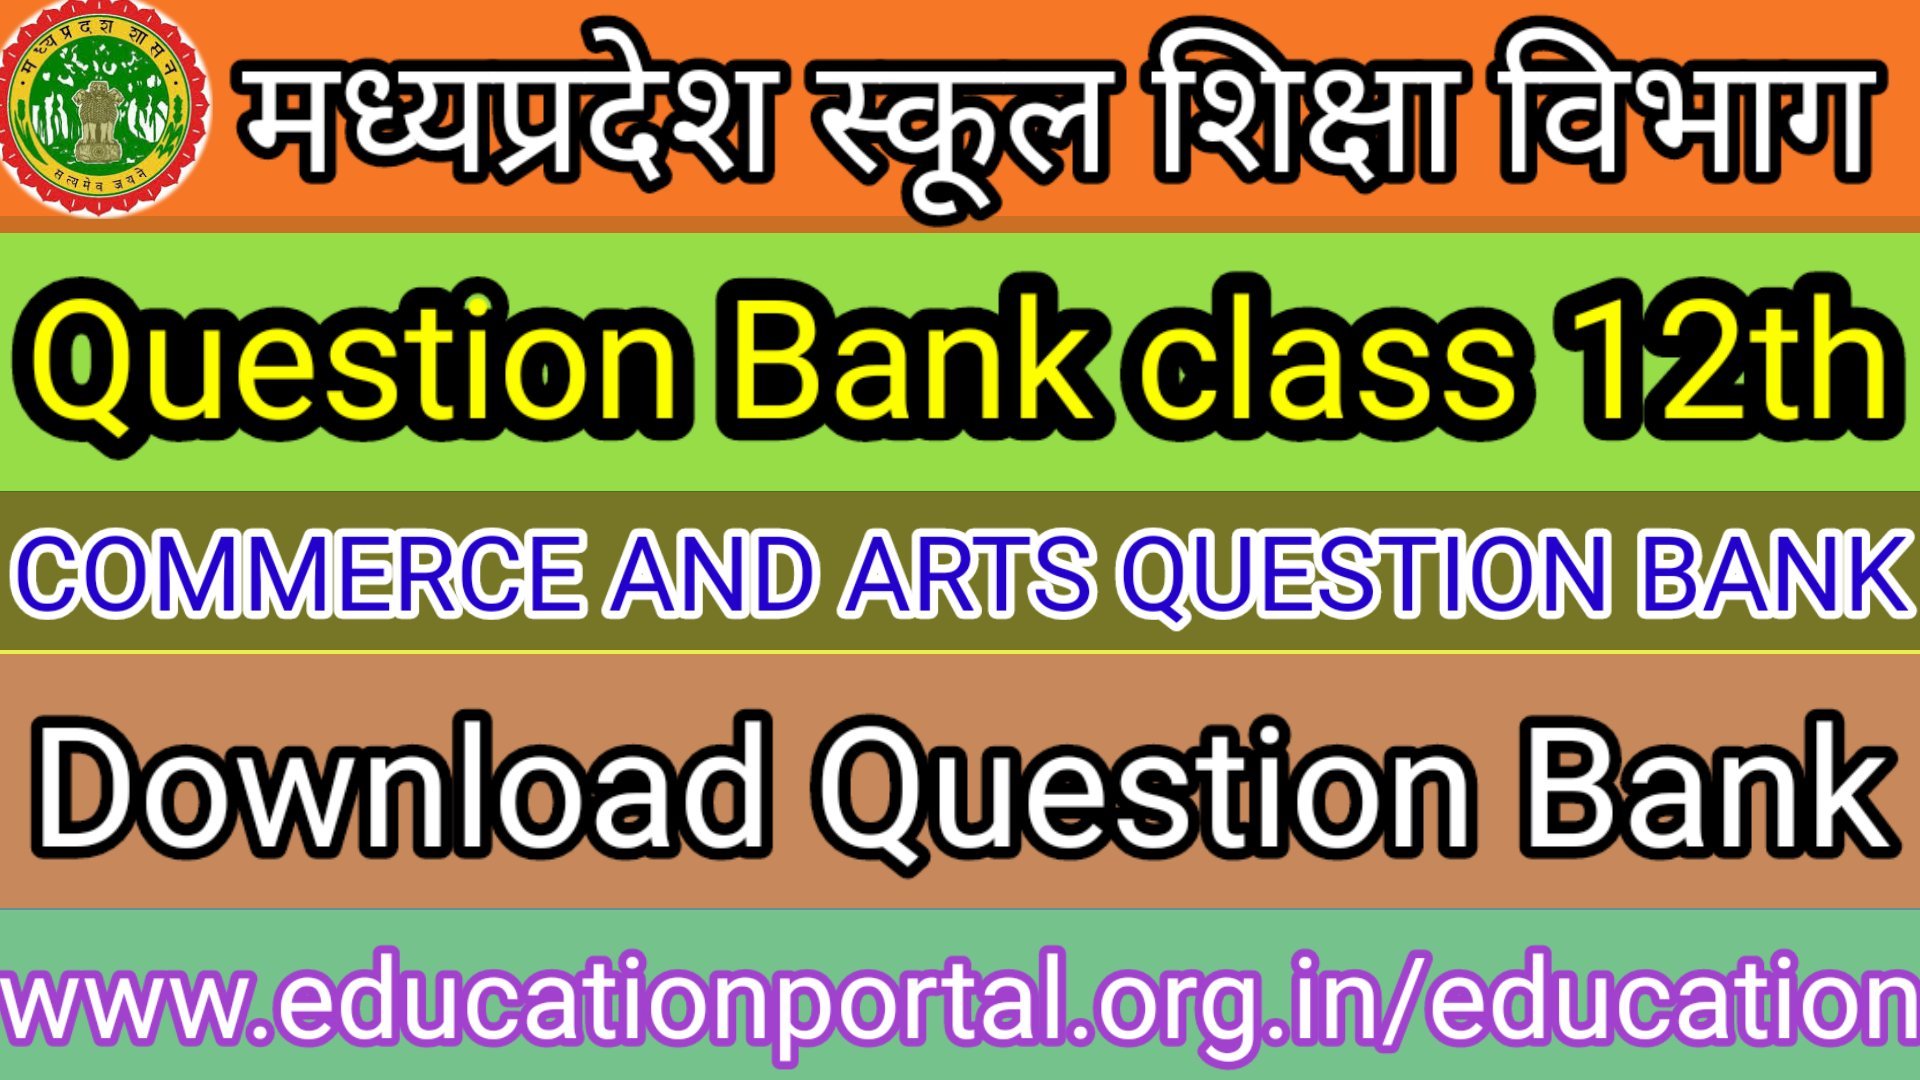 Prashna Bank Class 12th Commerce & Arts Mp Board कक्षा १२वी हाई स्कूल एवं हायर सेकेंडरी स्कूल के विद्यार्थियों के लिए प्रश्न बैंक 2021